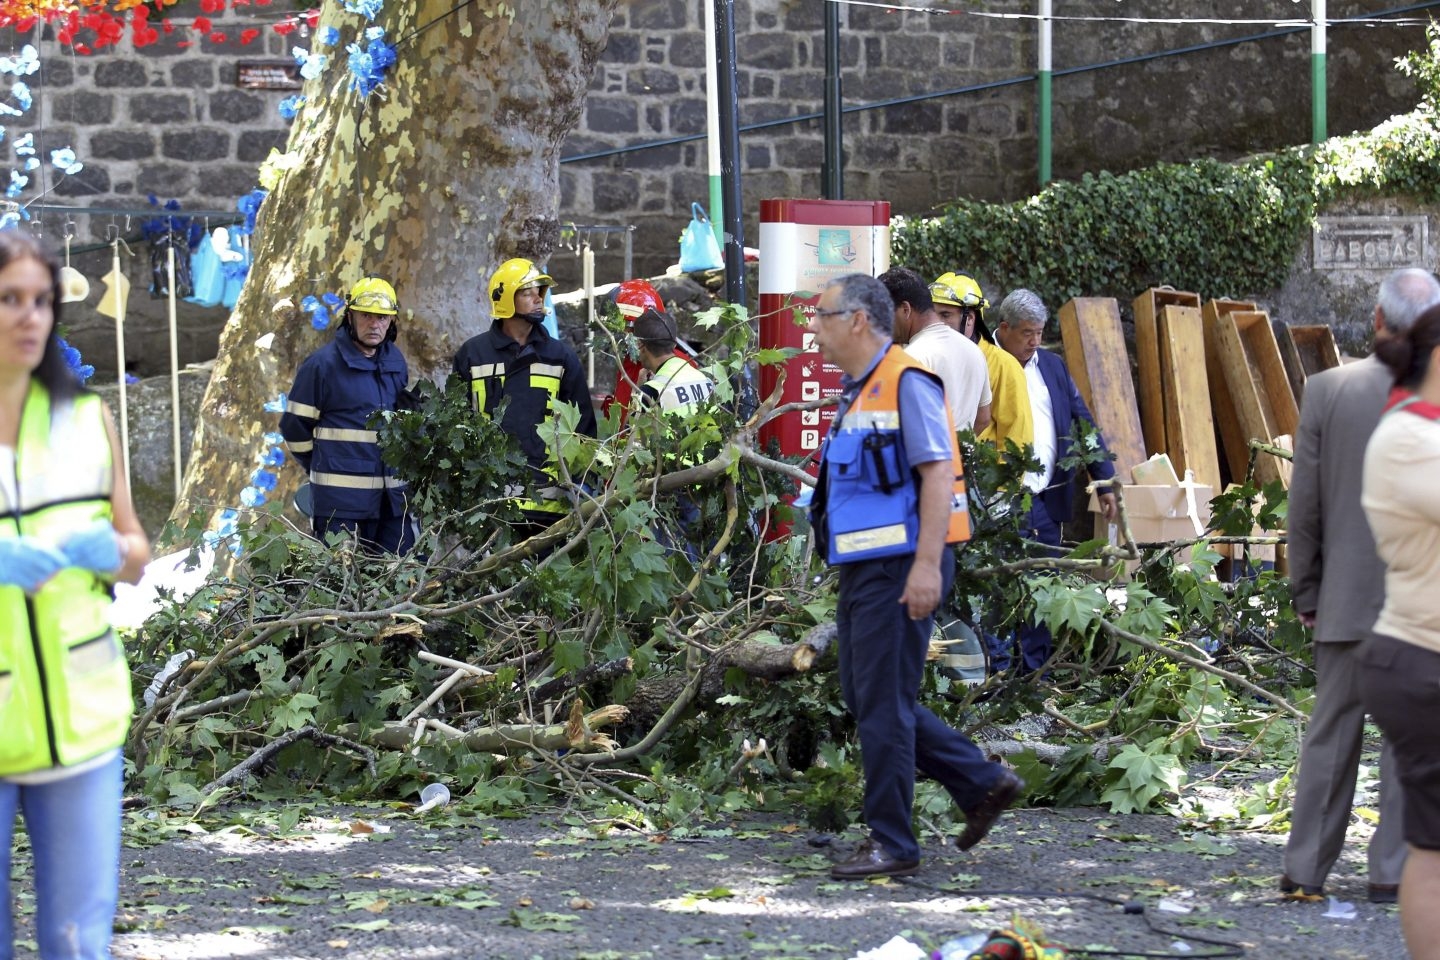 Momento del sinisestro en Madeira (Portugal), después de que cayera un árbol durante una romería religiosa.